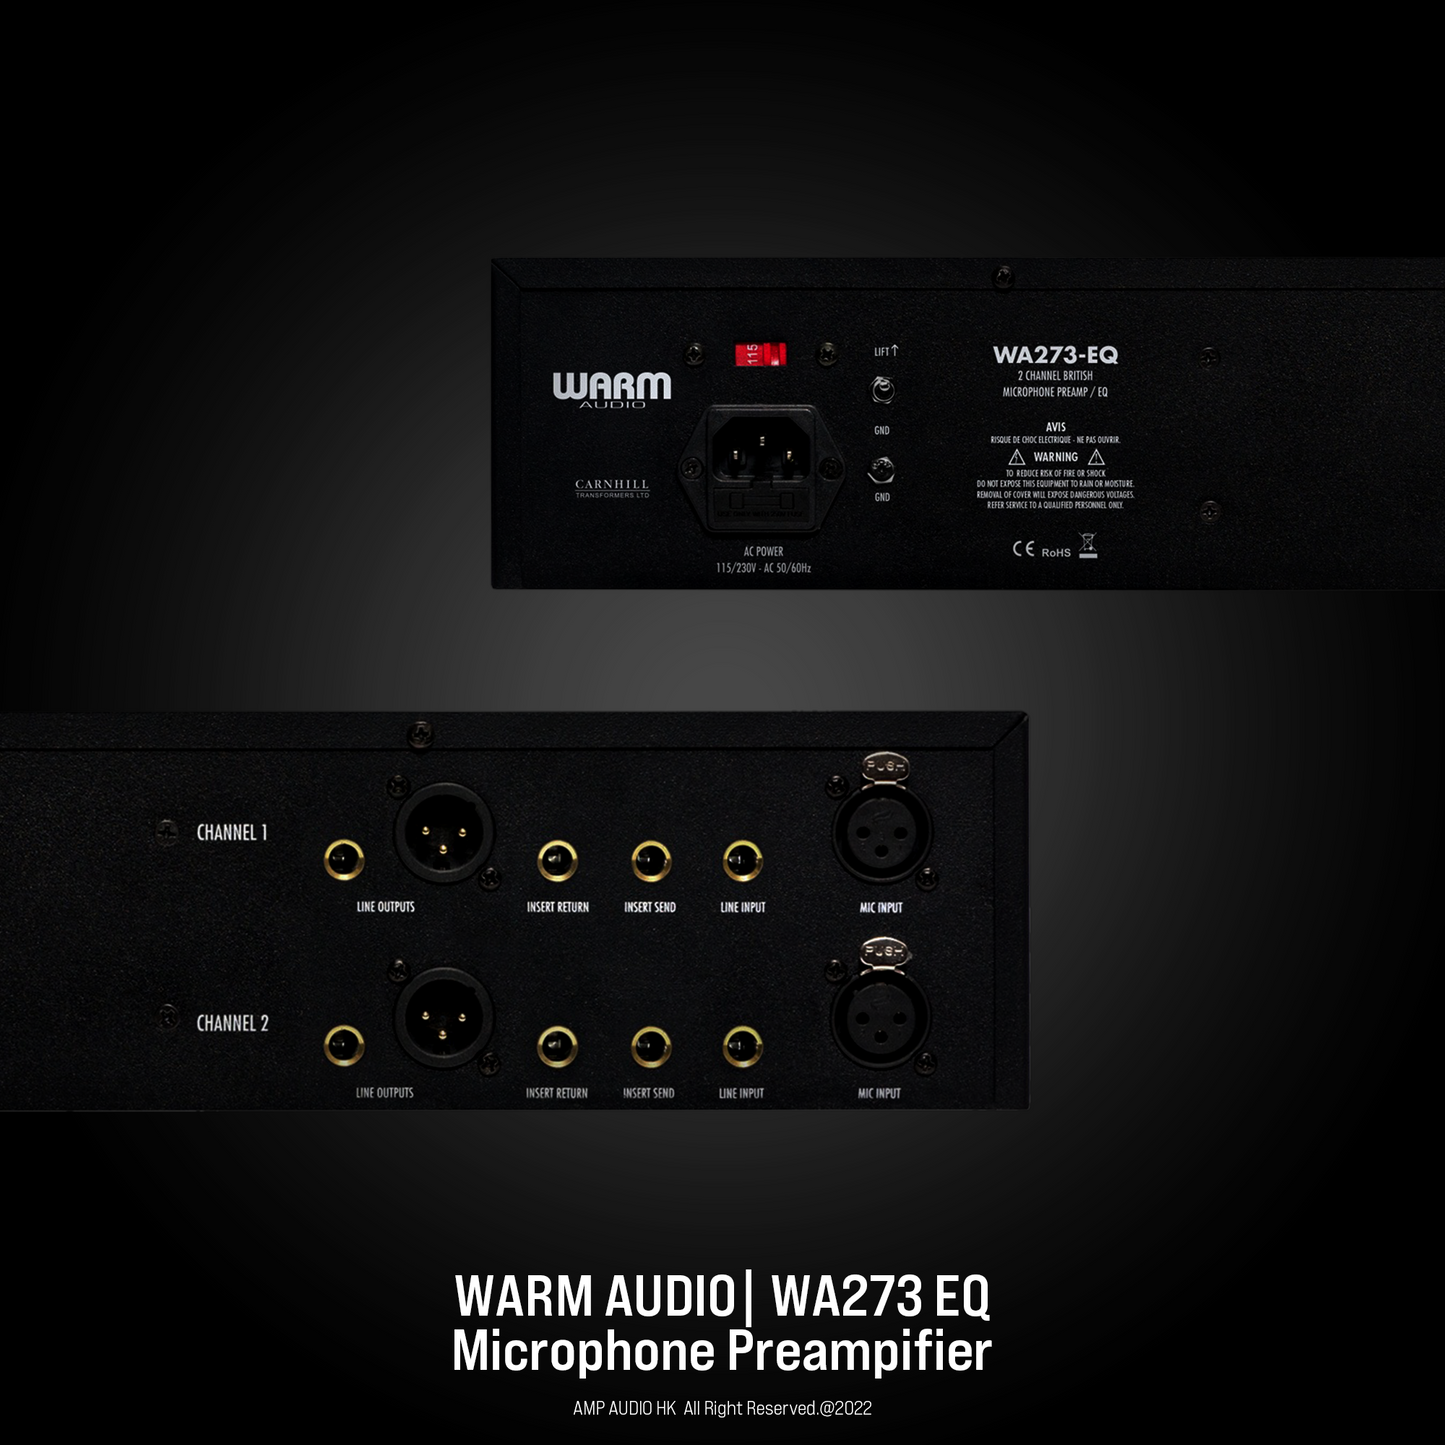 Warm Audio | WA273-EQ